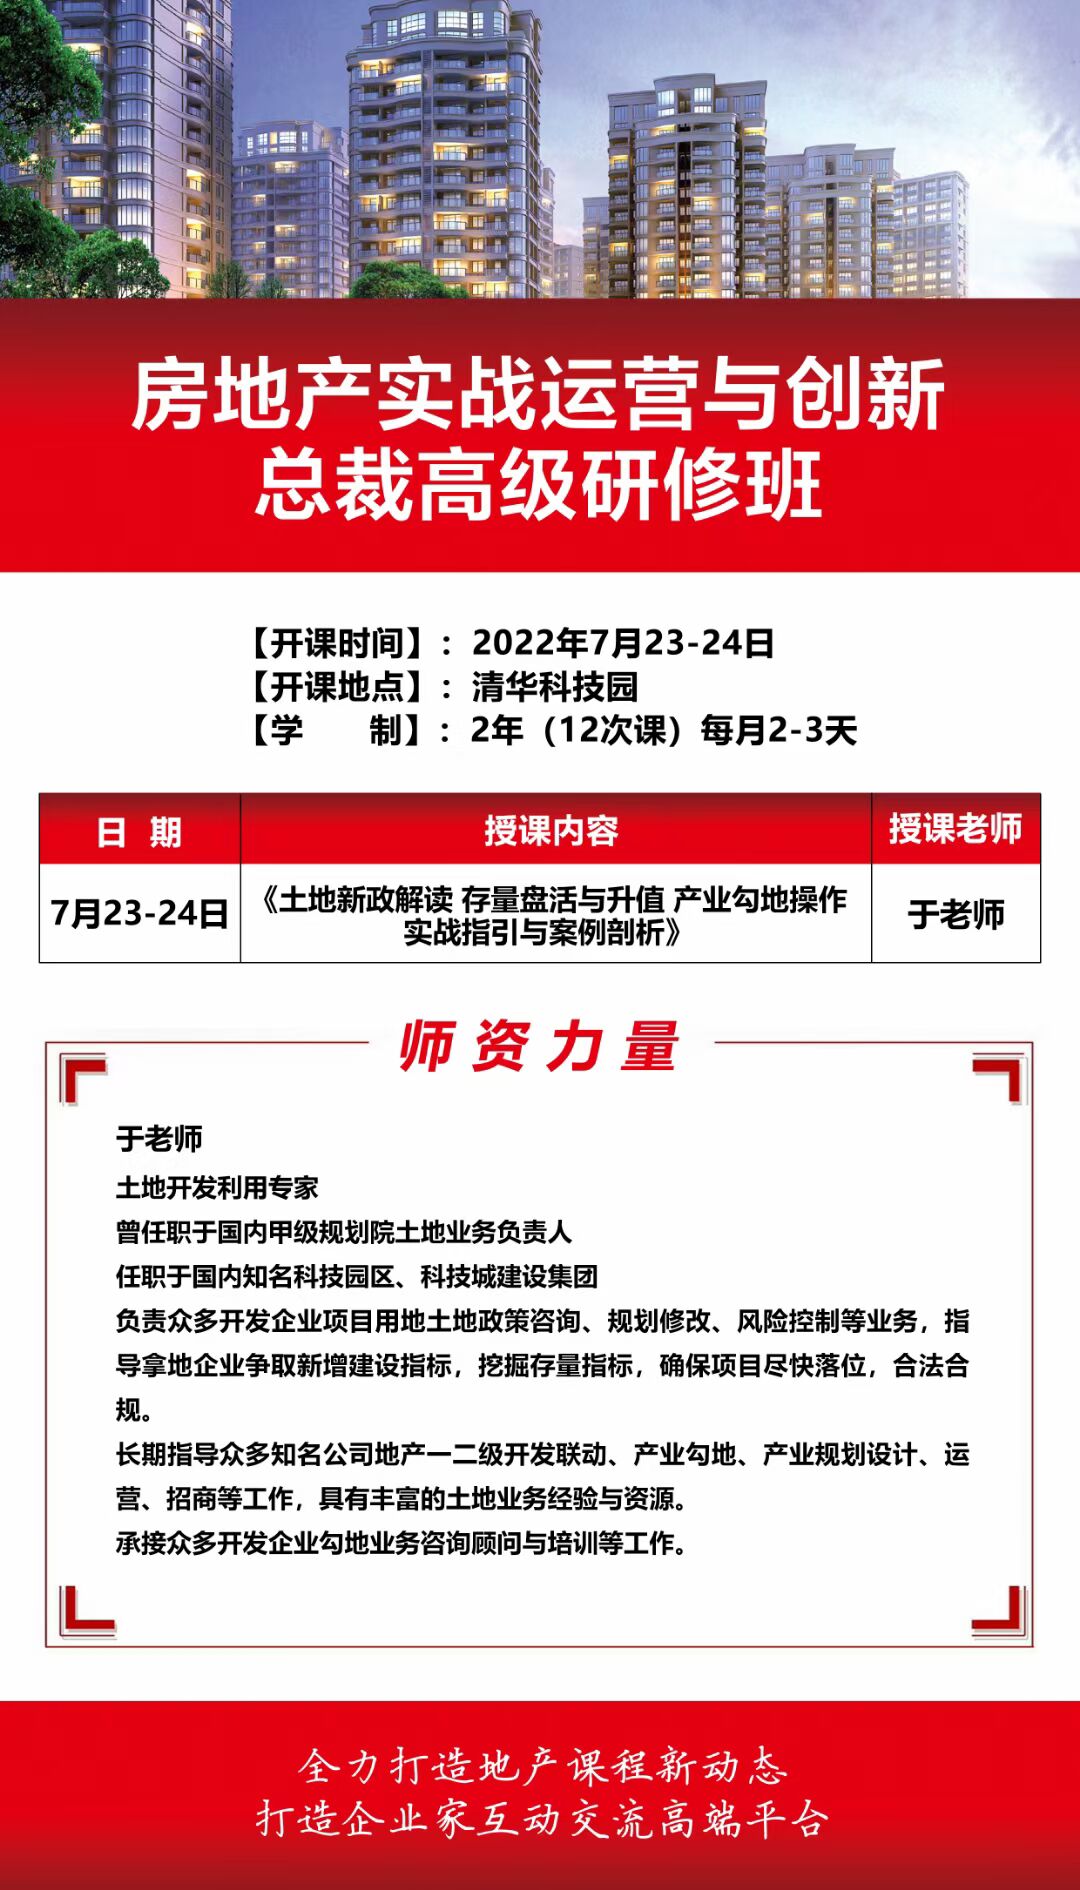 2022年7月23-24日清大房地产实战总裁班课程开课通知